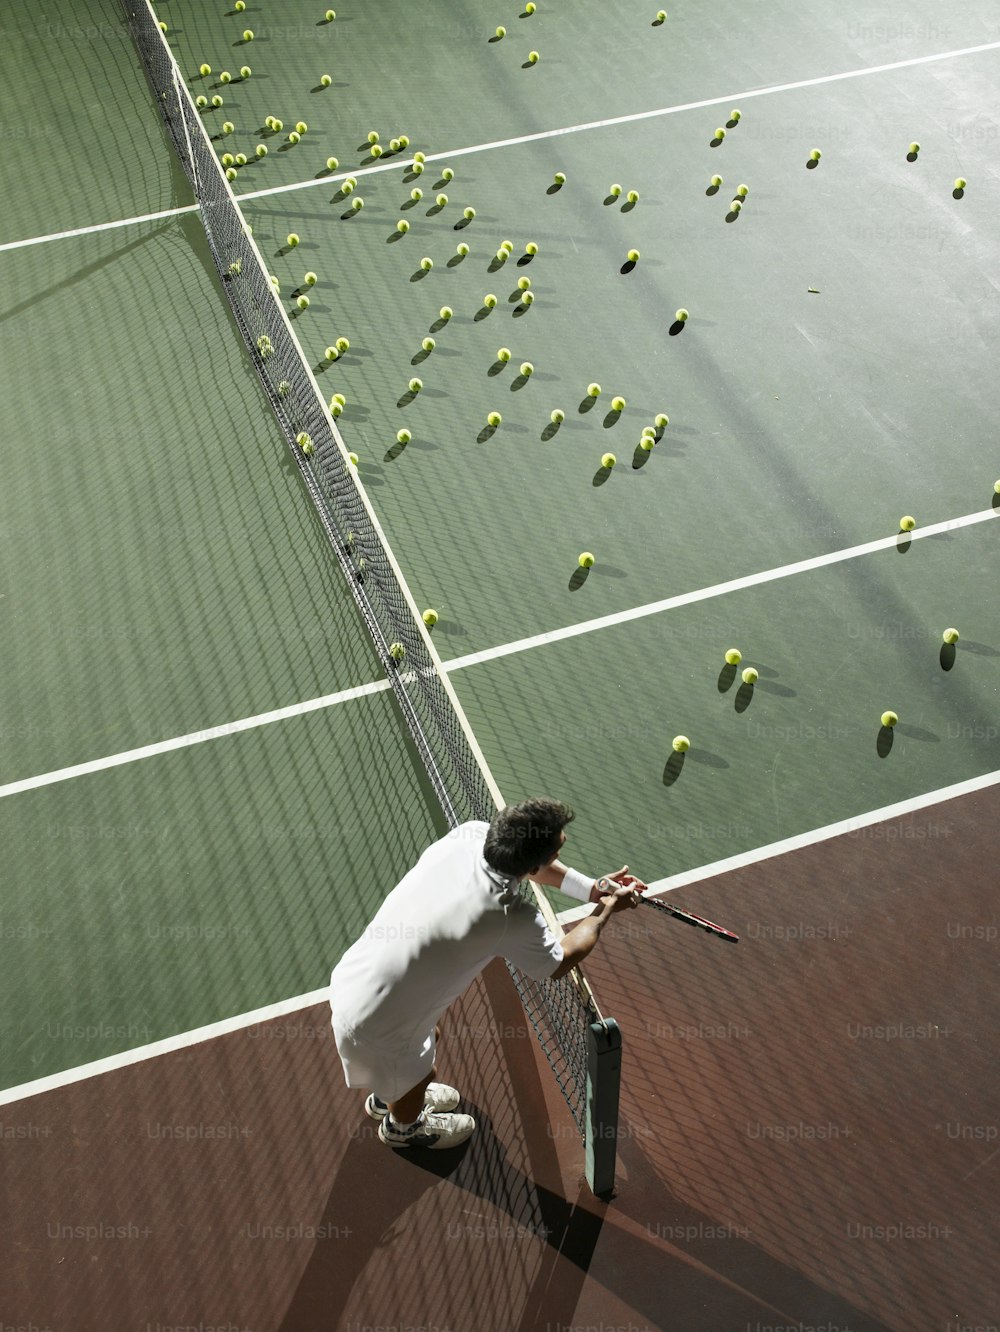 a man on a tennis court holding a racket